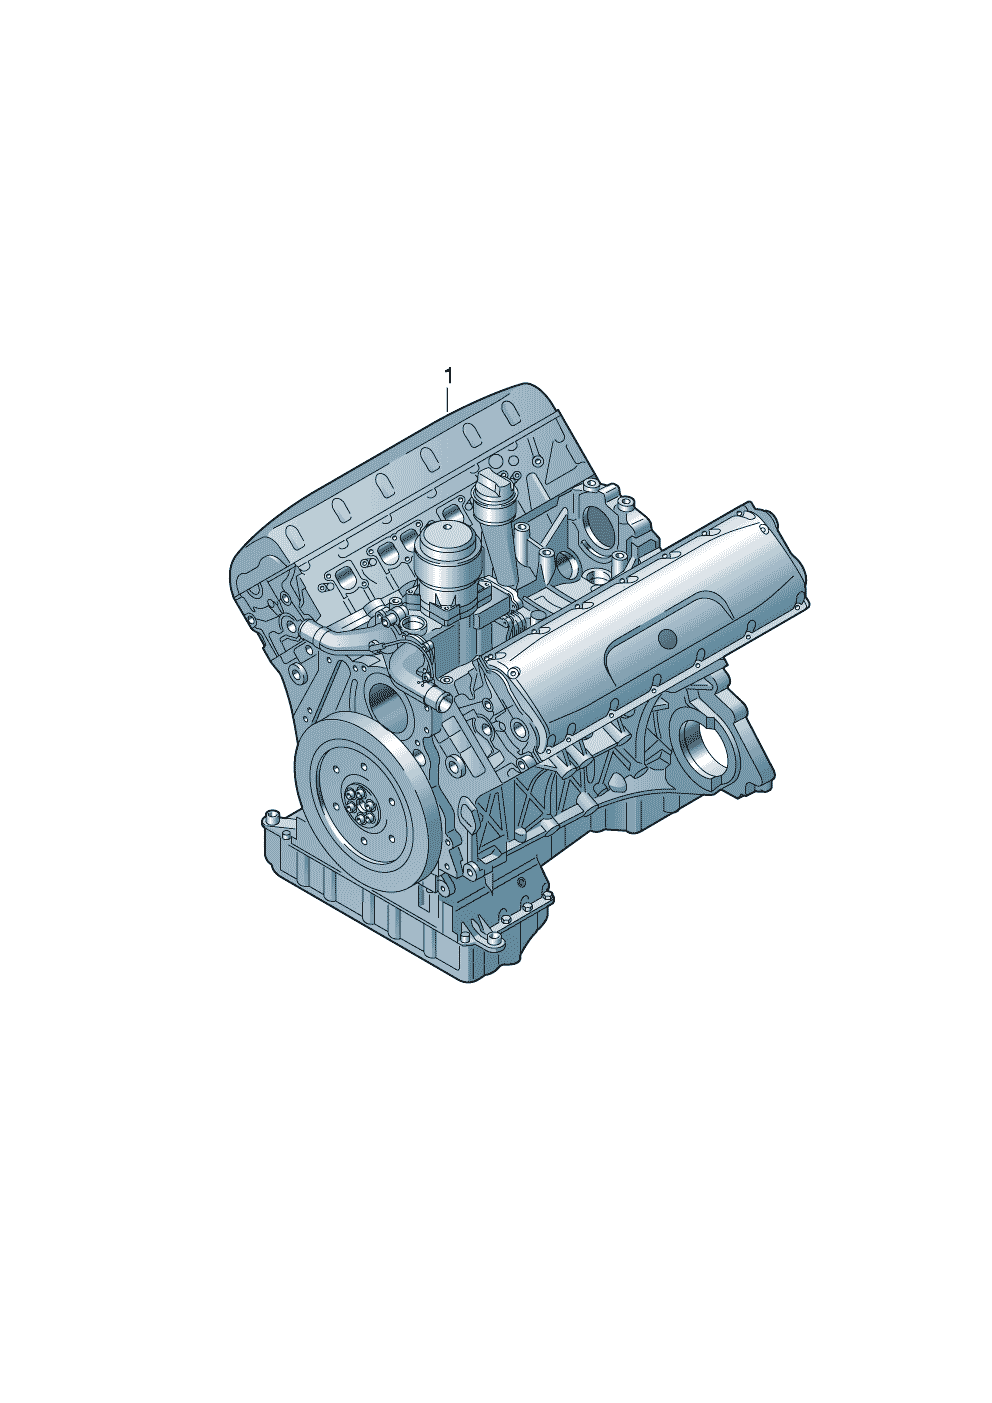 Rumpfmotor 5,2 Ltr. - Audi R8/Spyder - r8